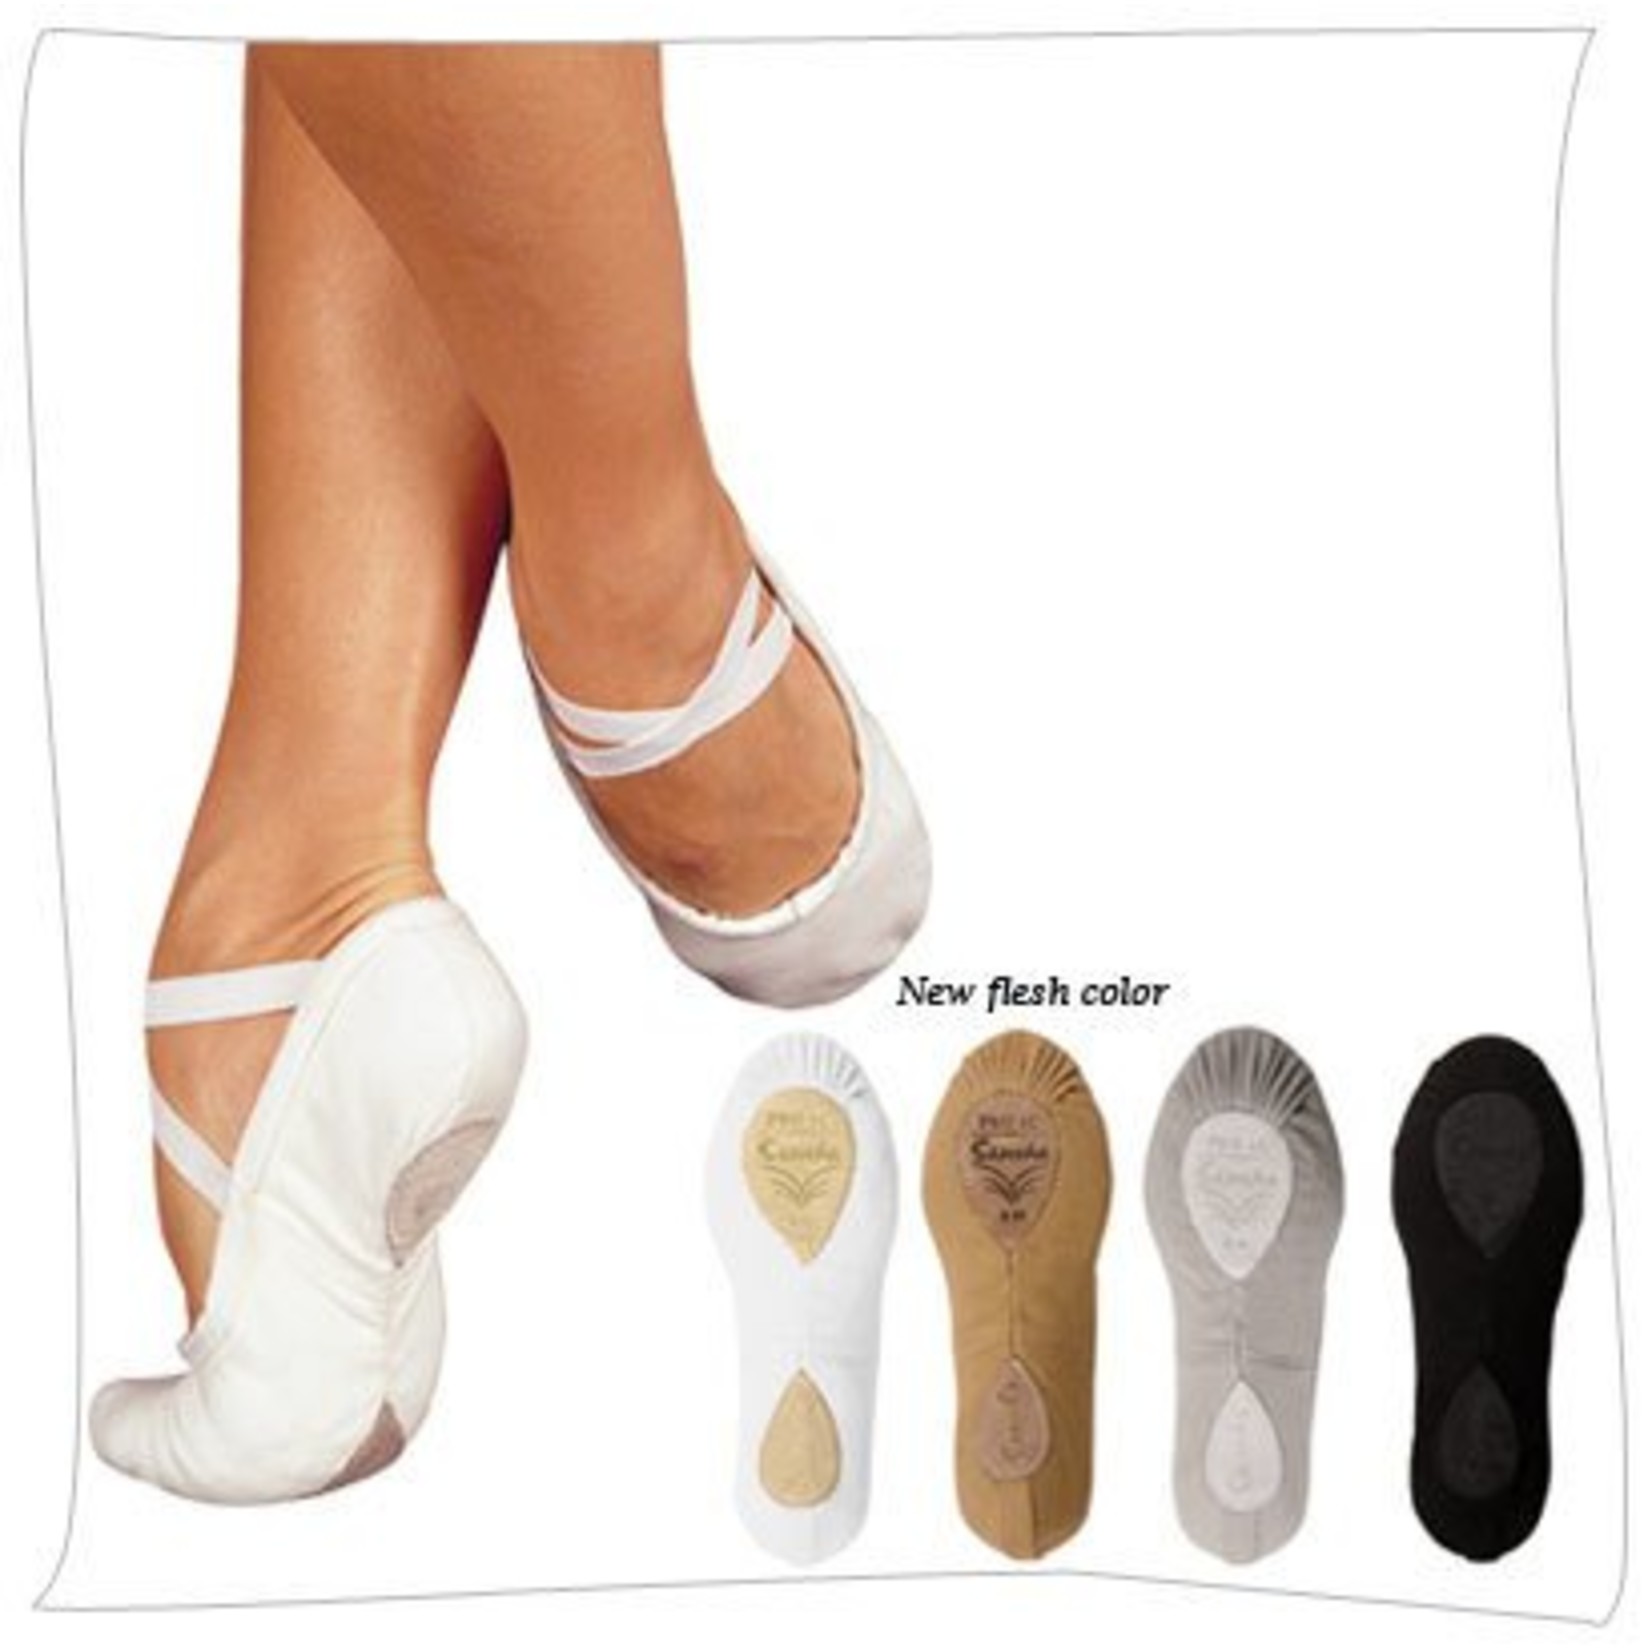 Sansha Pro1C Soft Ballet Shoe